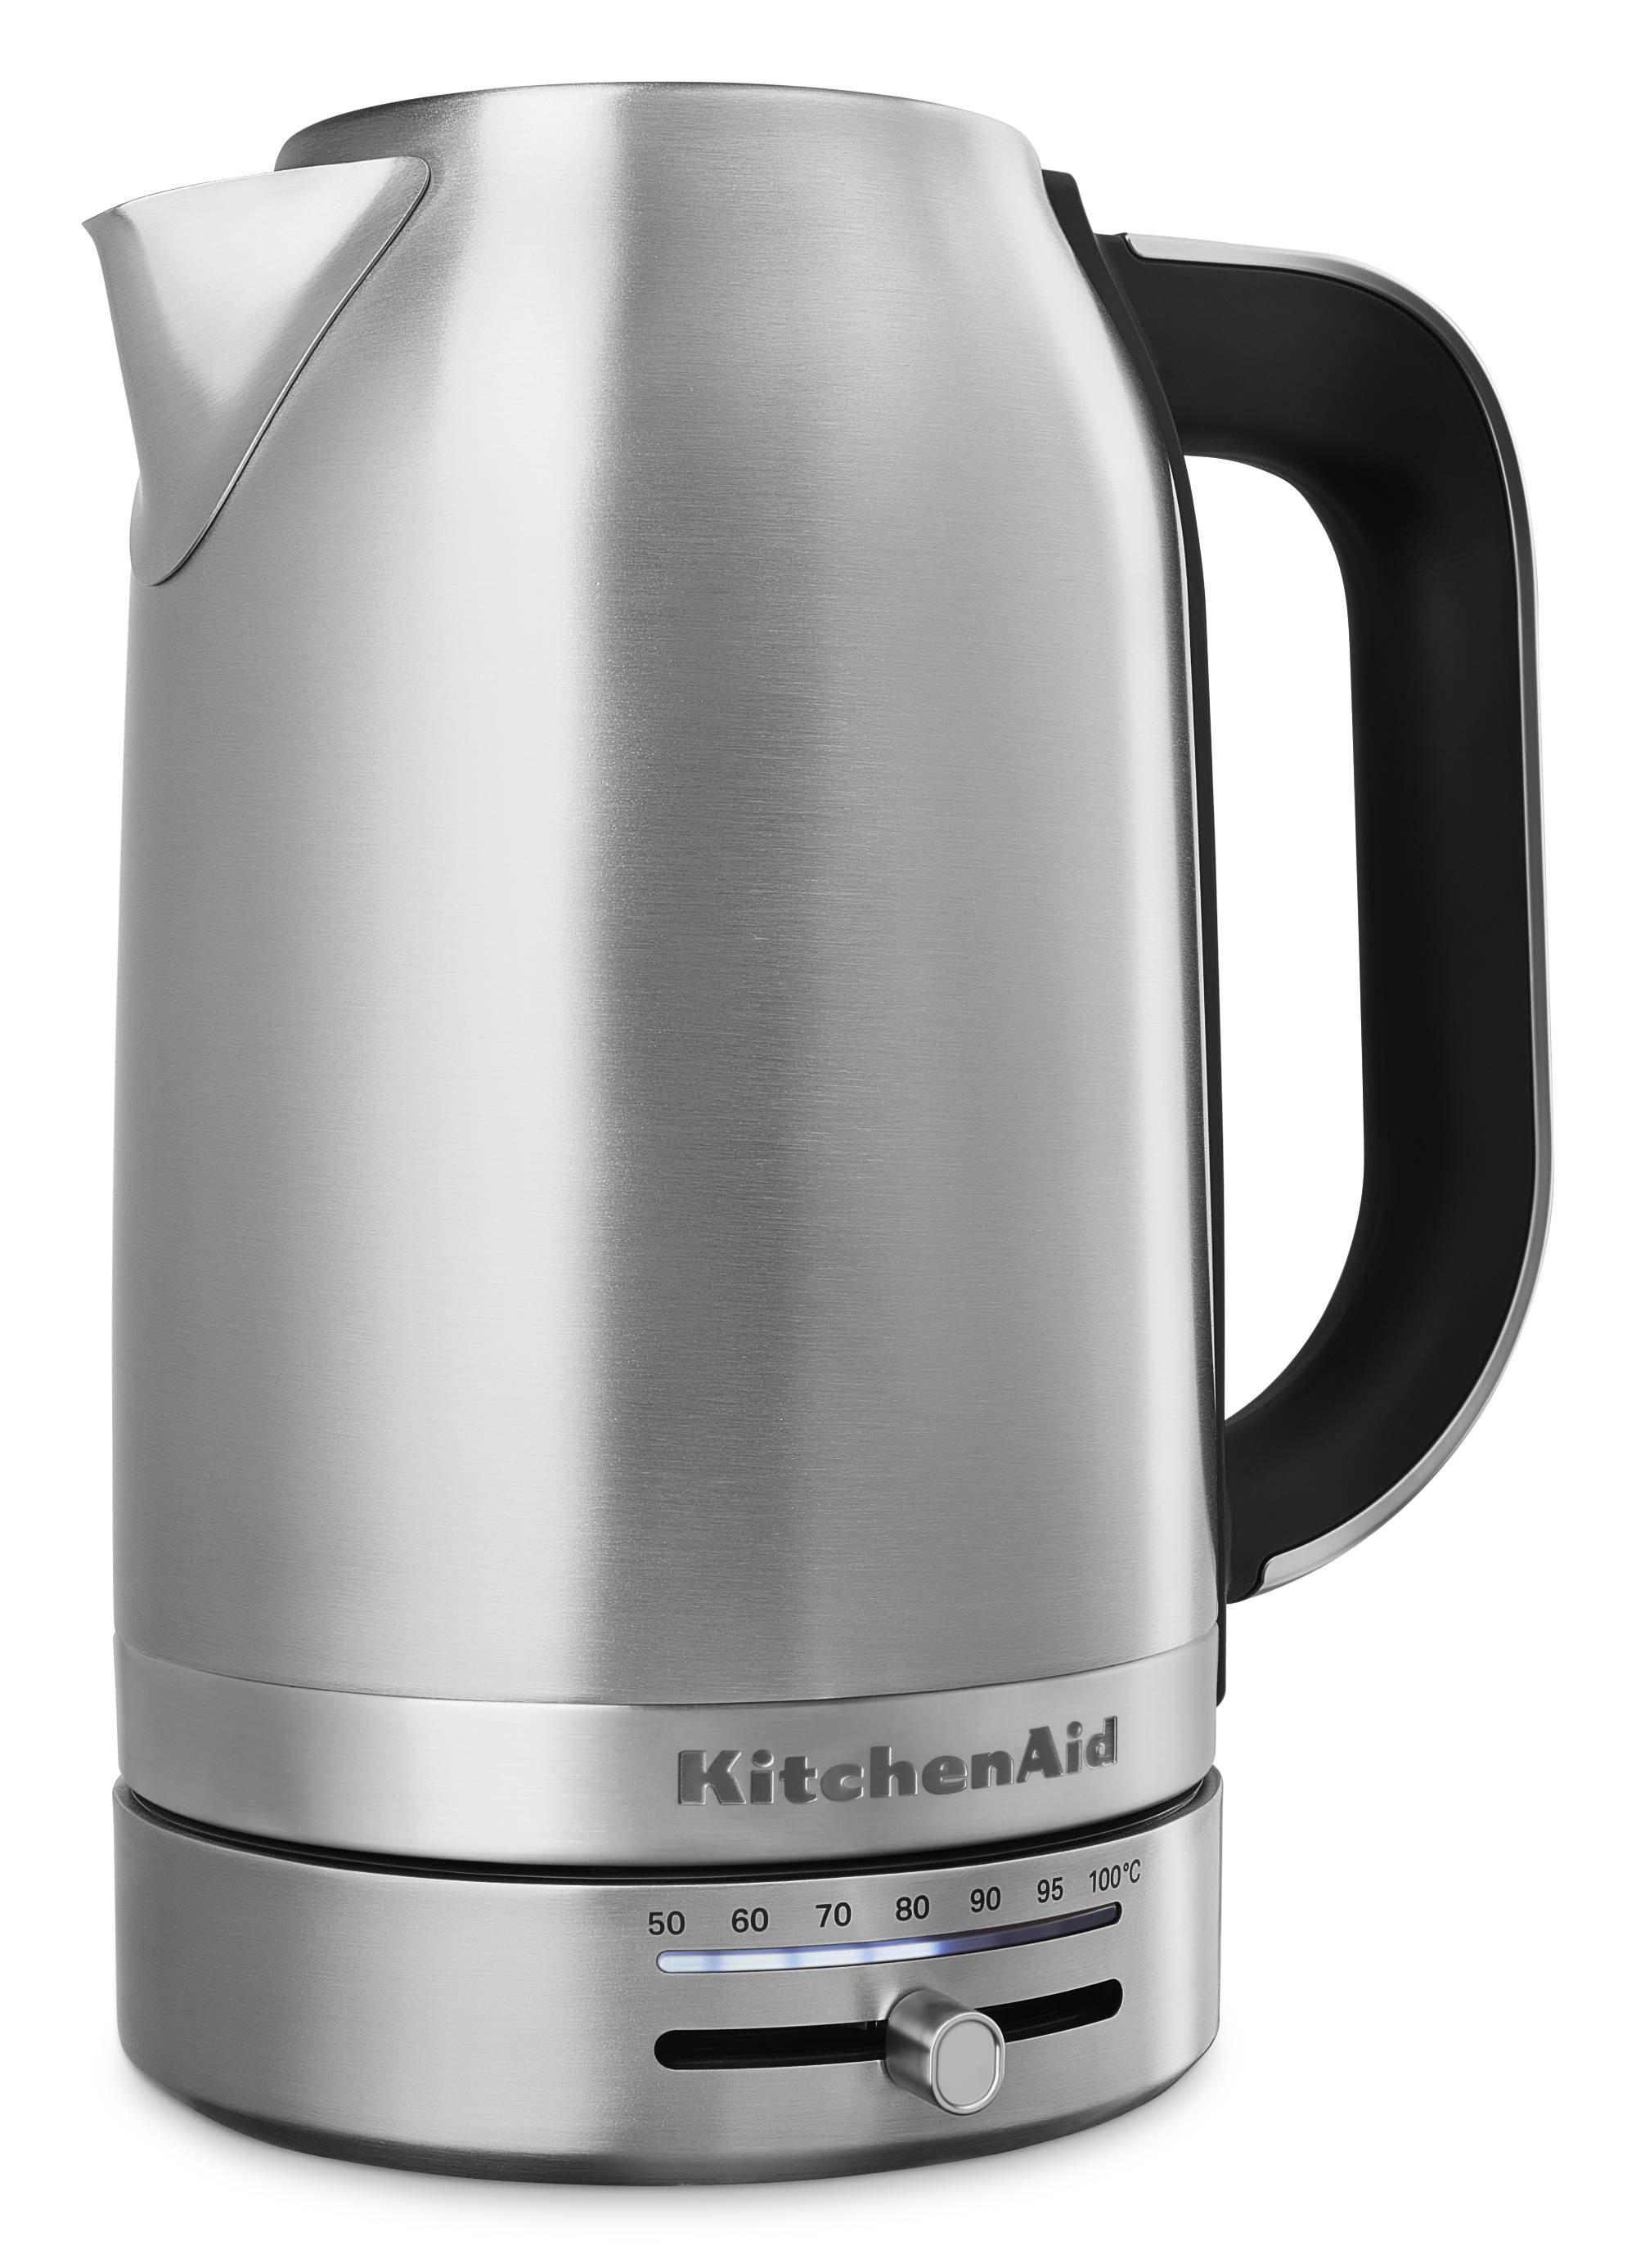 KitchenAid Wasserkocher 1,7l  mit Temperaturregelung Edelstahl